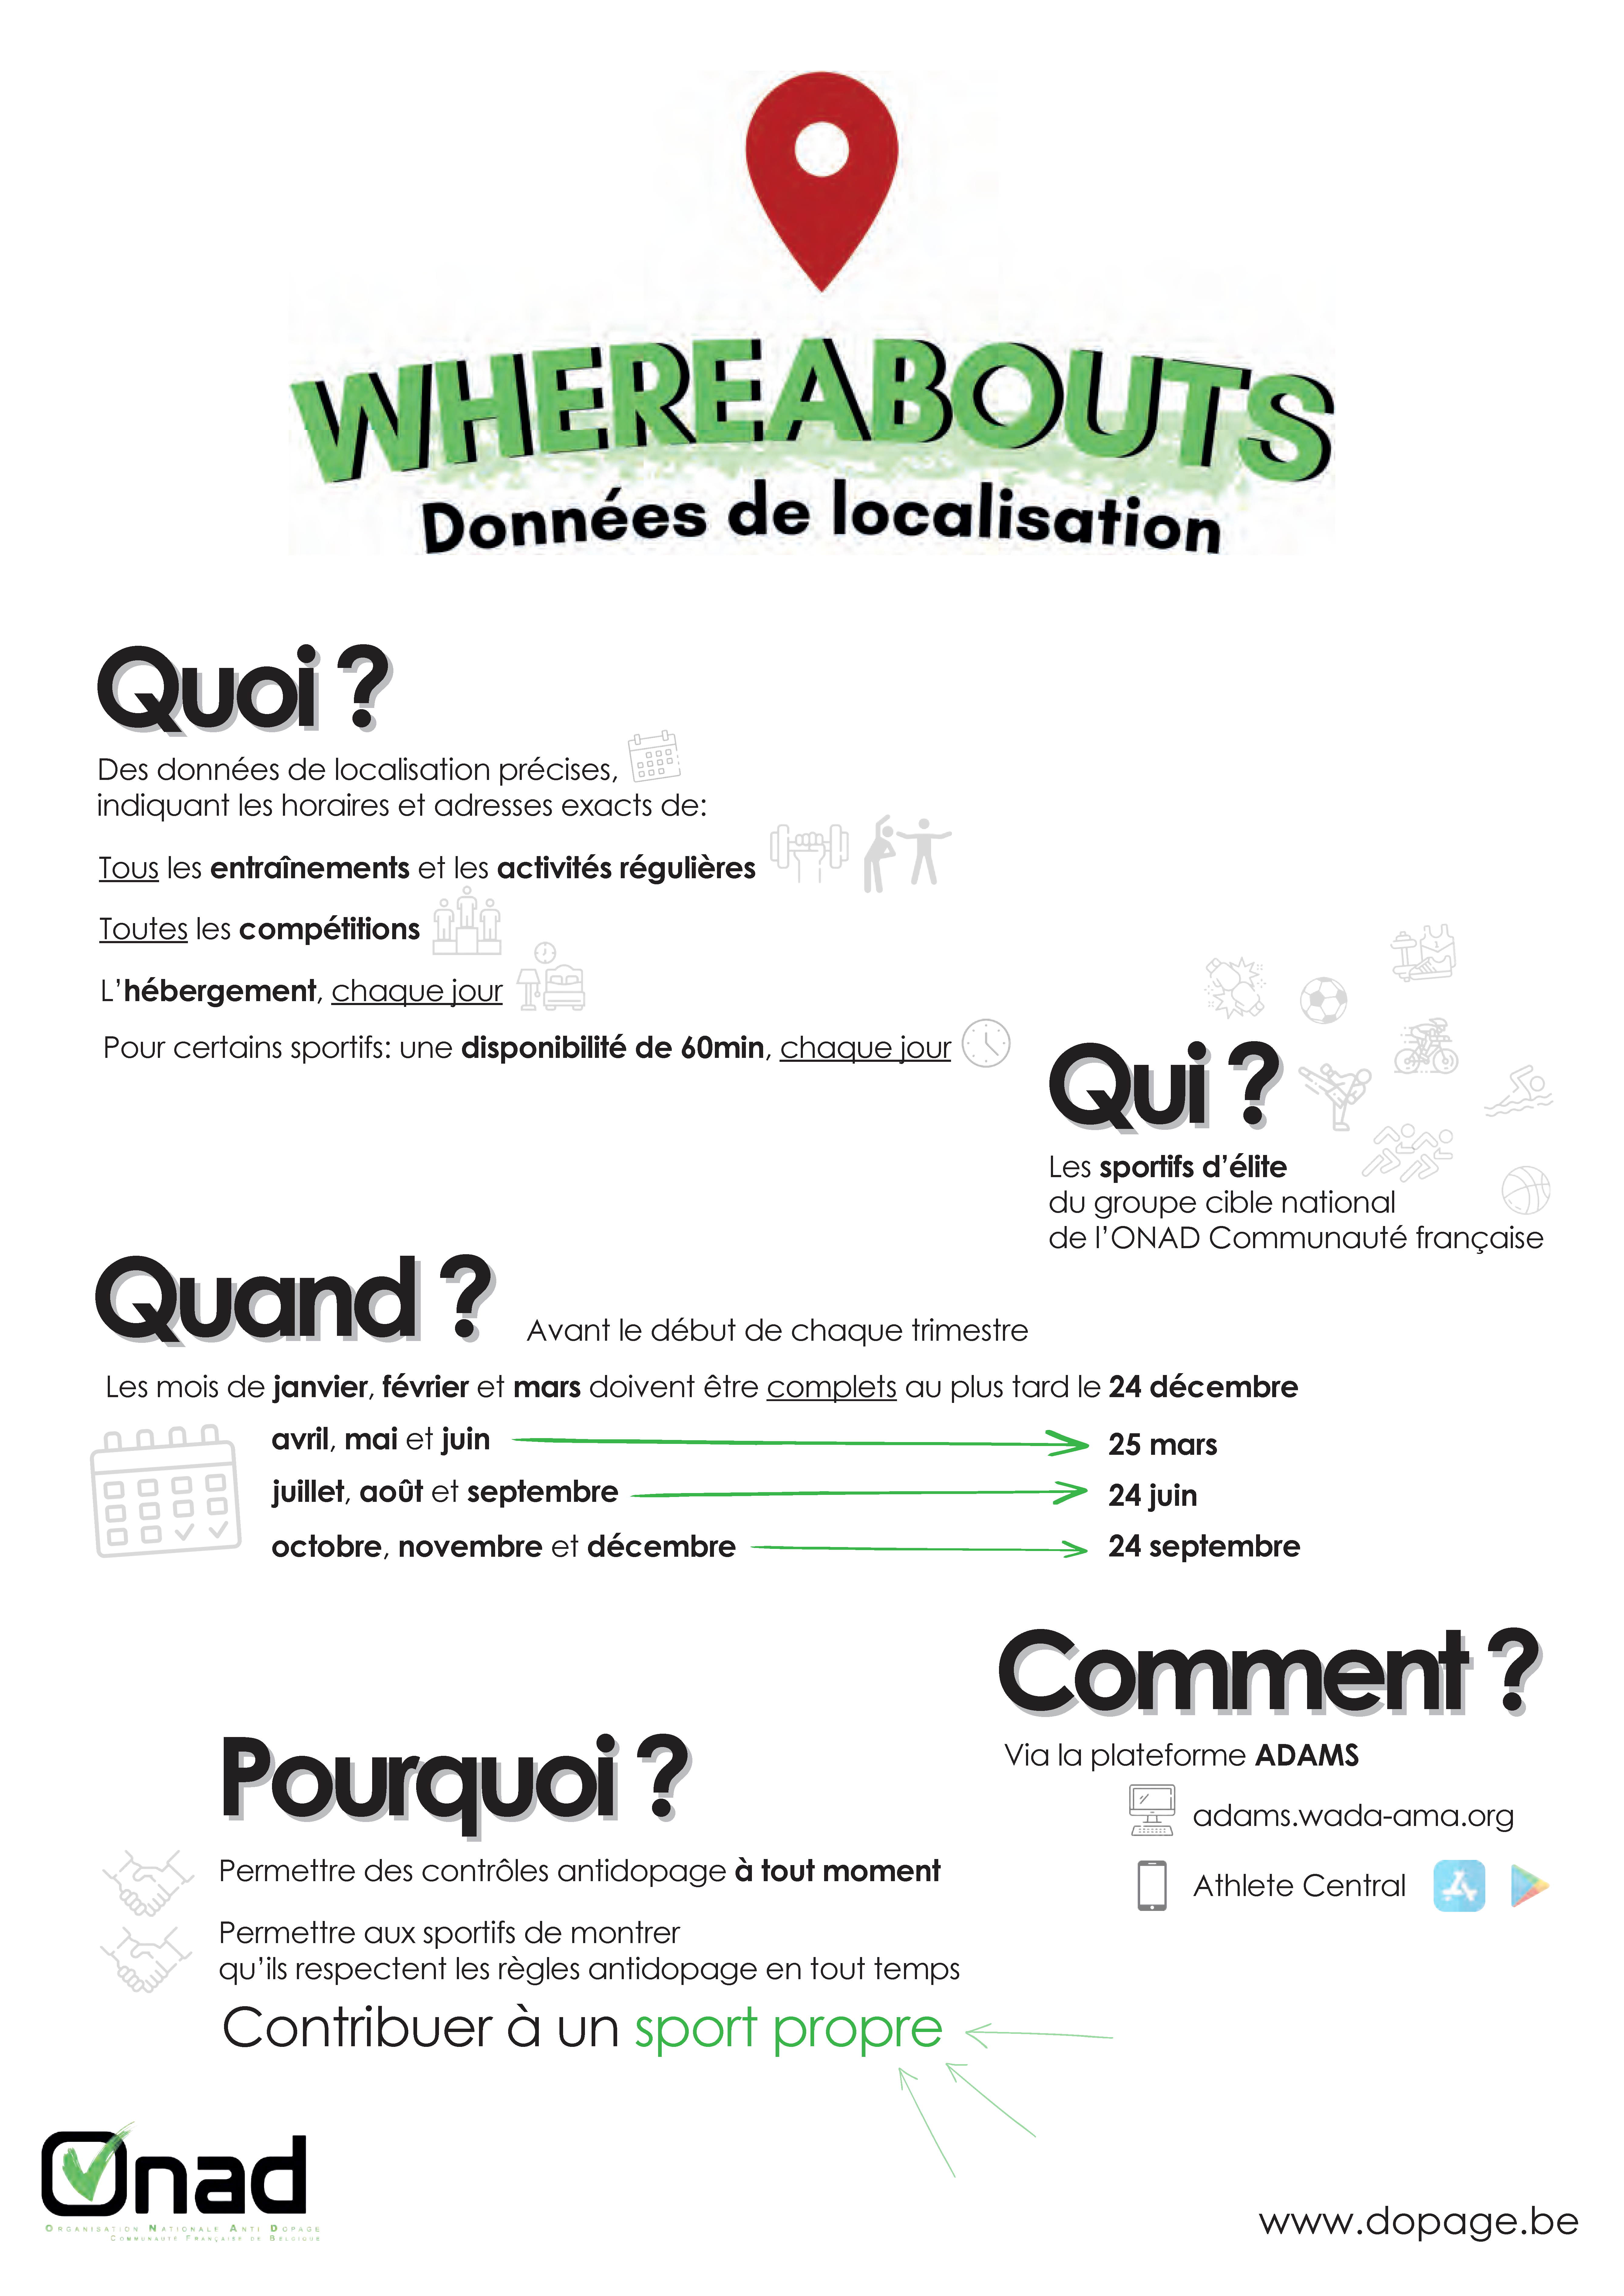 Fiche pratique relative aux Whereabouts (document PDF à télécharger)